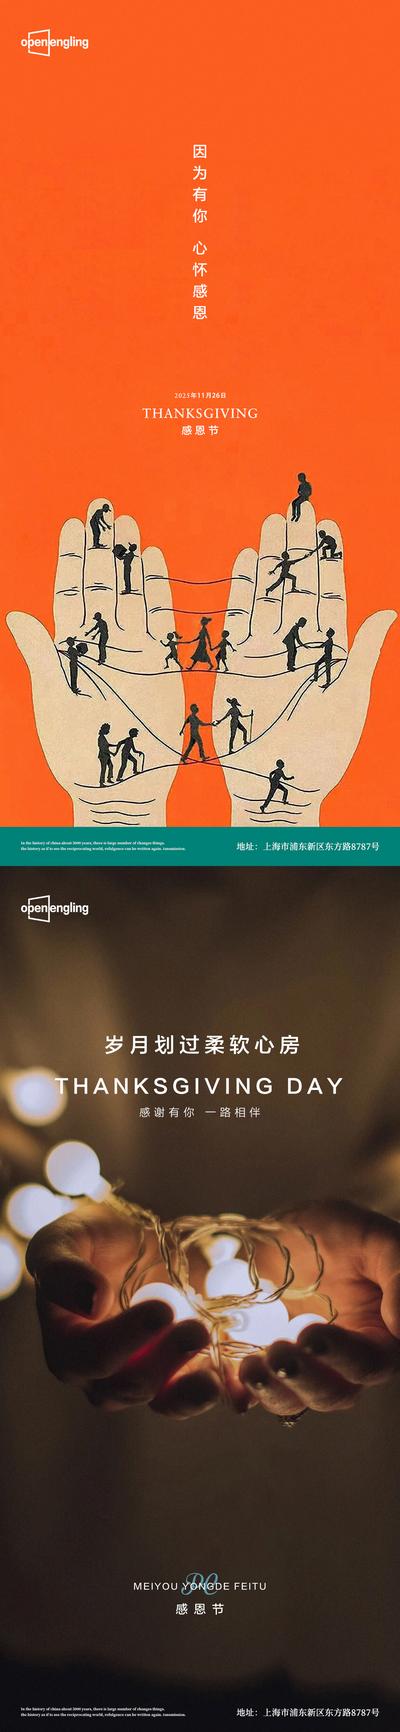 南门网 海报 地产 公历节日 感恩节 插画 摄影 时尚